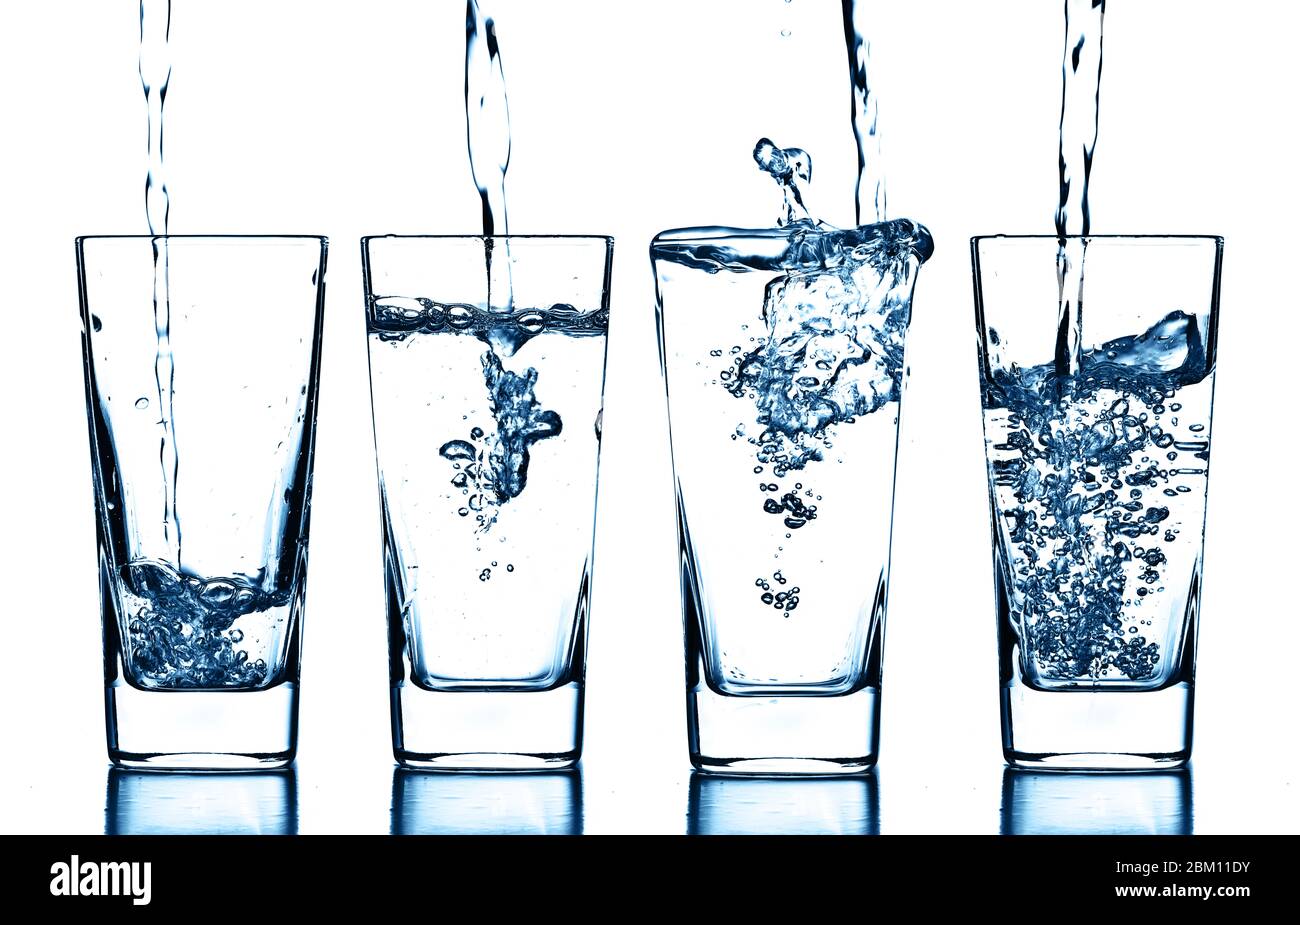 Много стаканов воды. Стакан воды. Прозрачная вода в стакане. Стакан с водой на прозрачном фоне. Стакан воды на белом фоне.